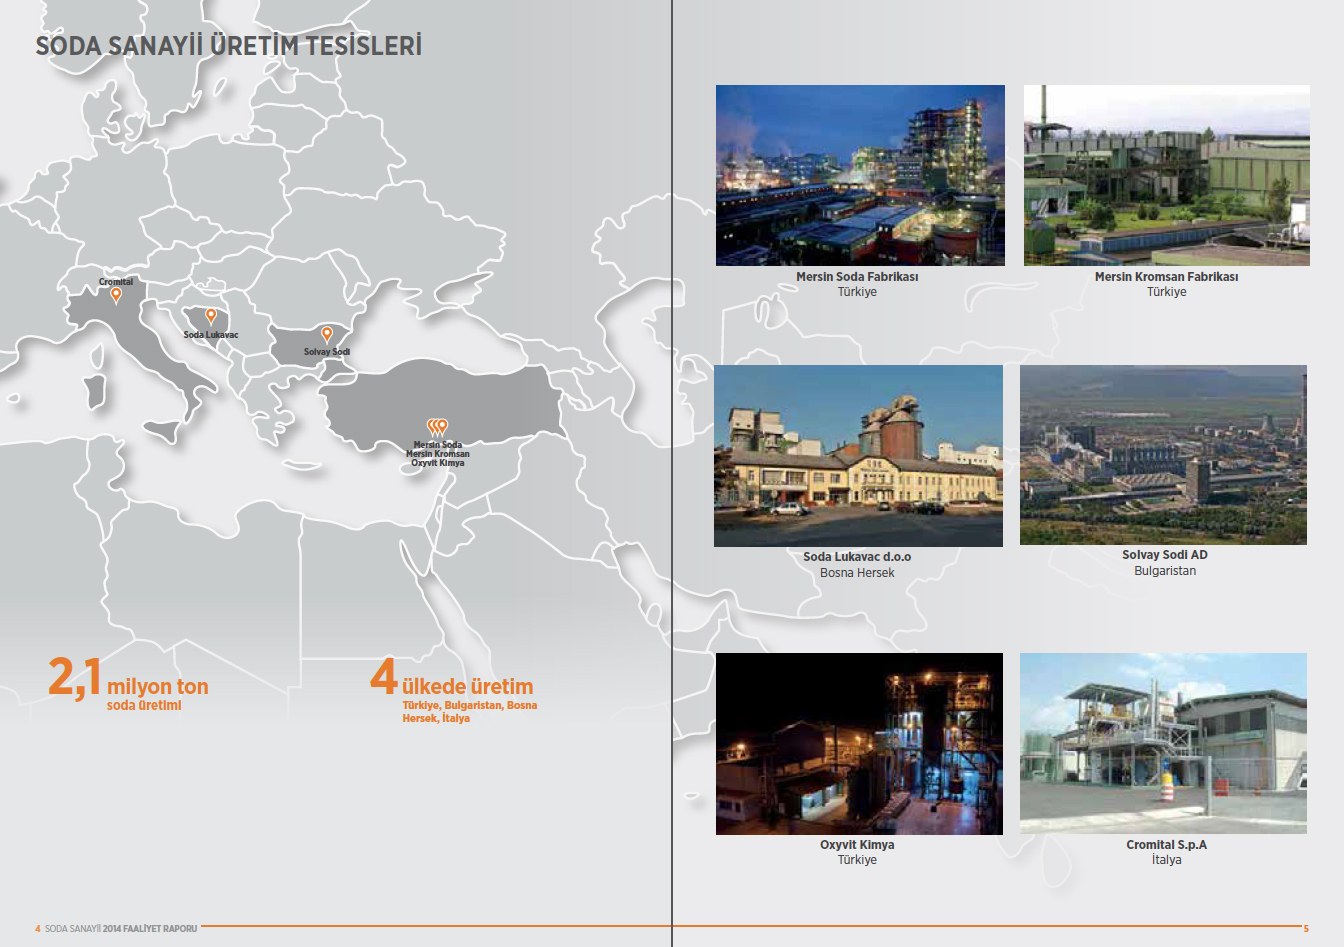 SODA SANAYİİ / 2014 Faaliyet Raporu / 2014 Annual Report